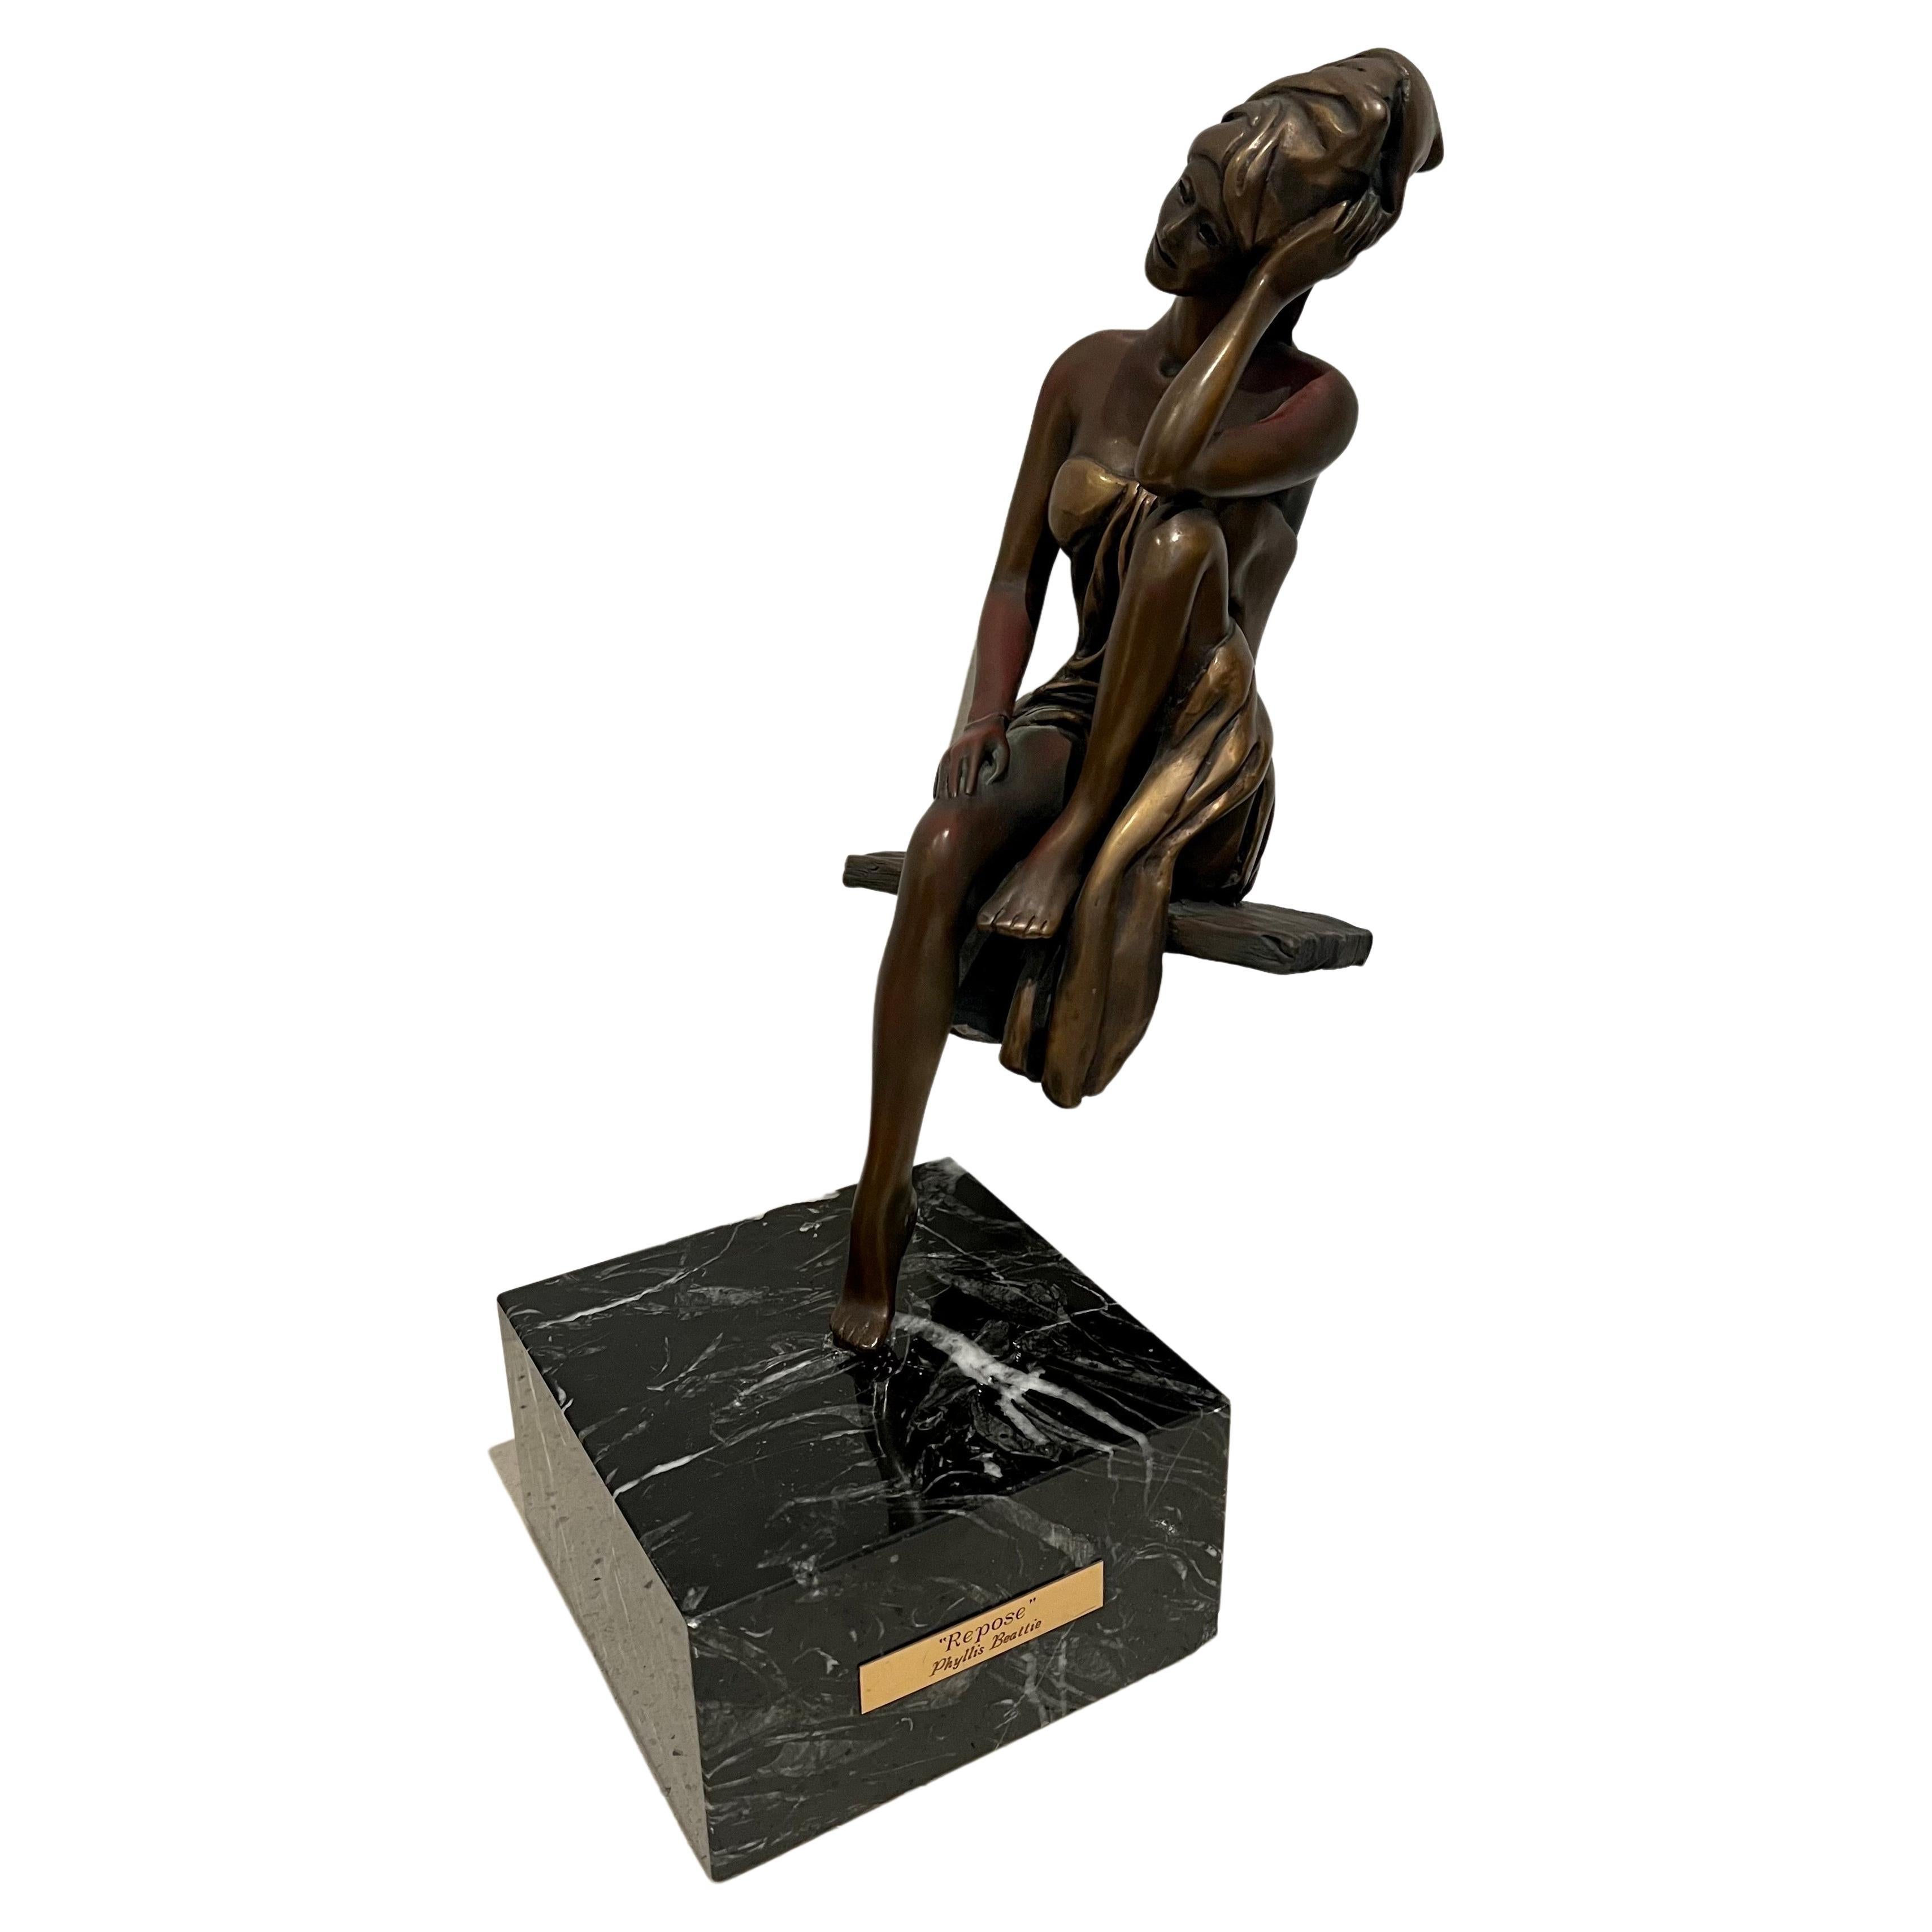 Magnifique sculpture en bronze de l'artiste Phyllis Beattie, vers les années 1990, reposant sur une solide base en marbre noir. La figure est épinglée et peut être retirée pour faciliter l'expédition et la manutention.